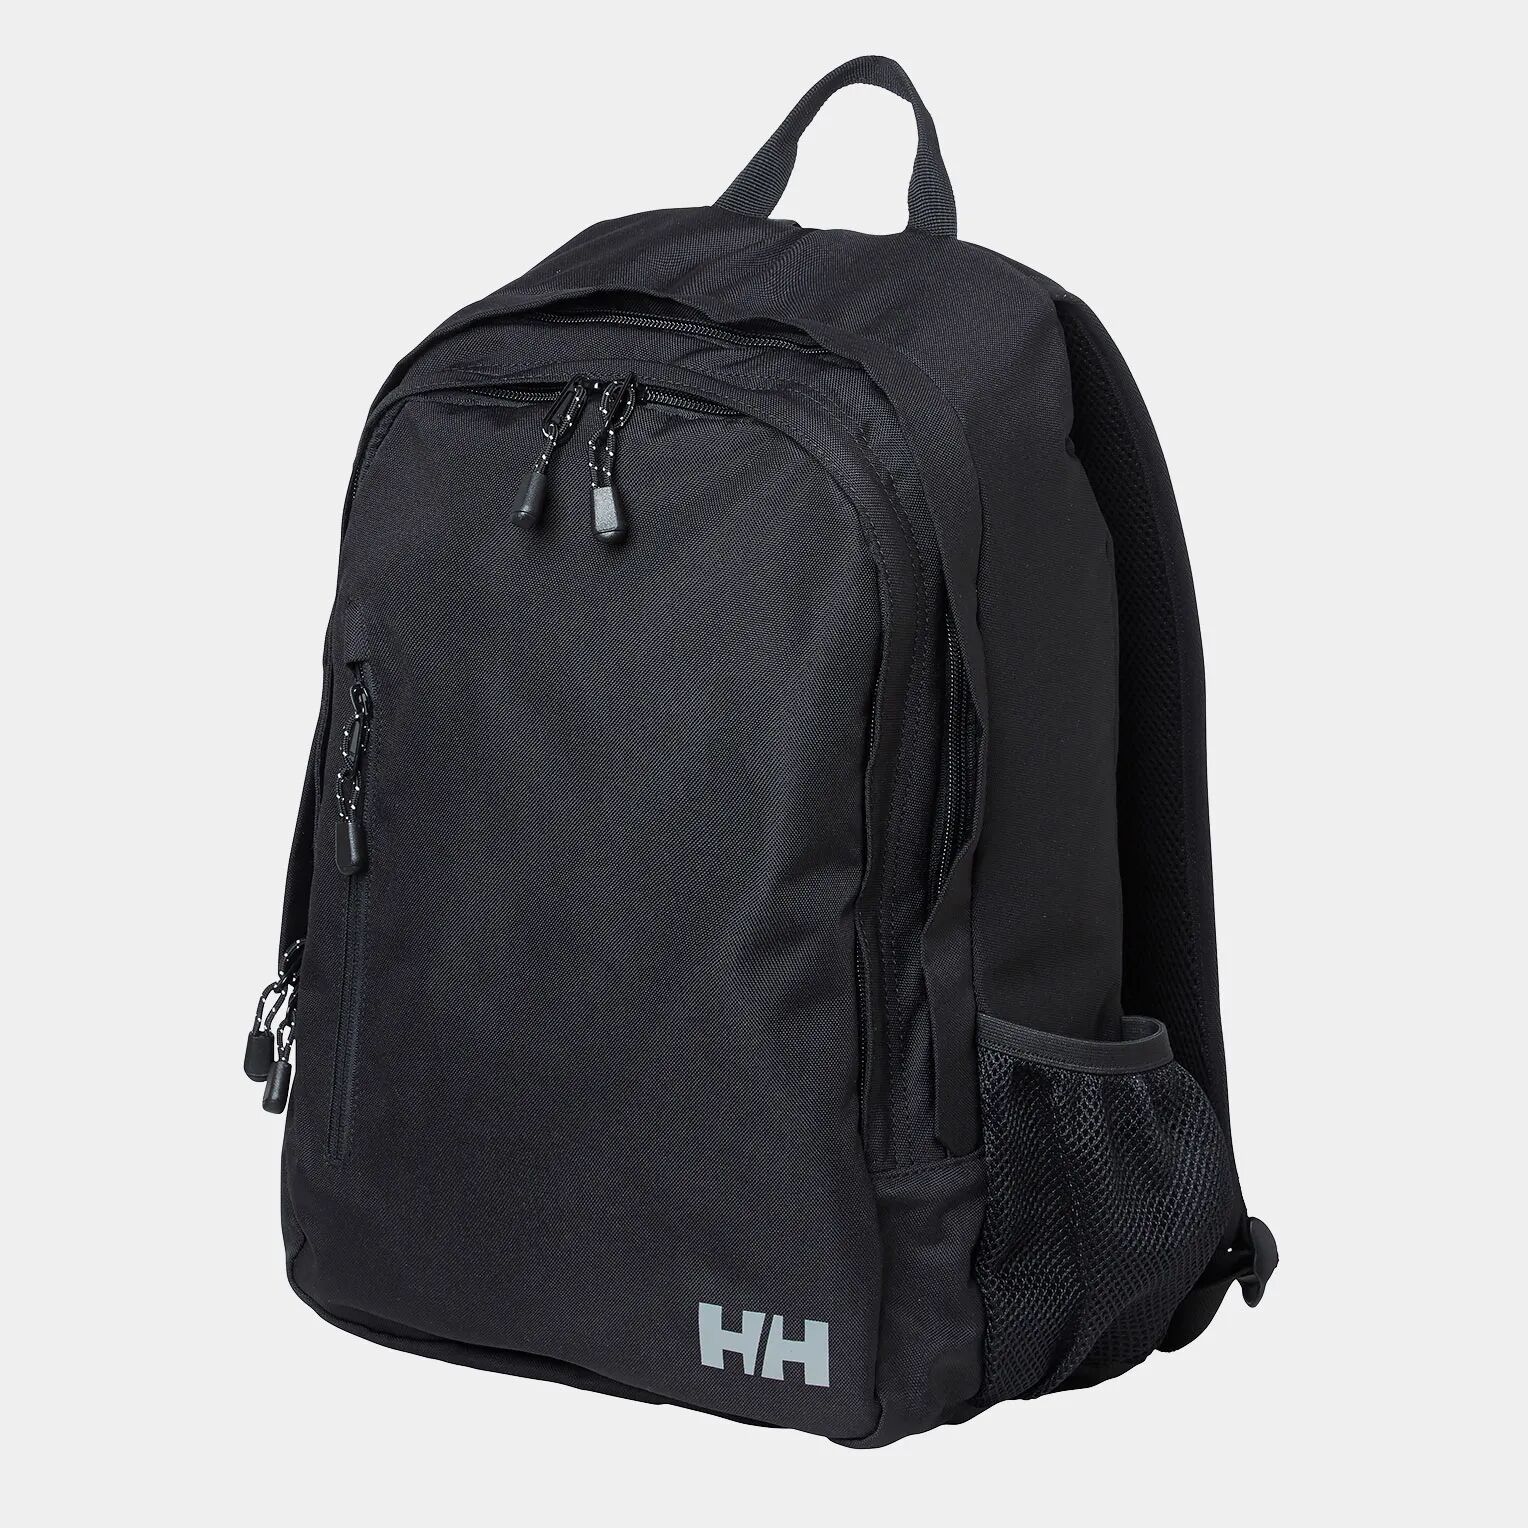 Helly Hansen Unisex Dublin 2.0 Backpack Black STD - Black - Unisex